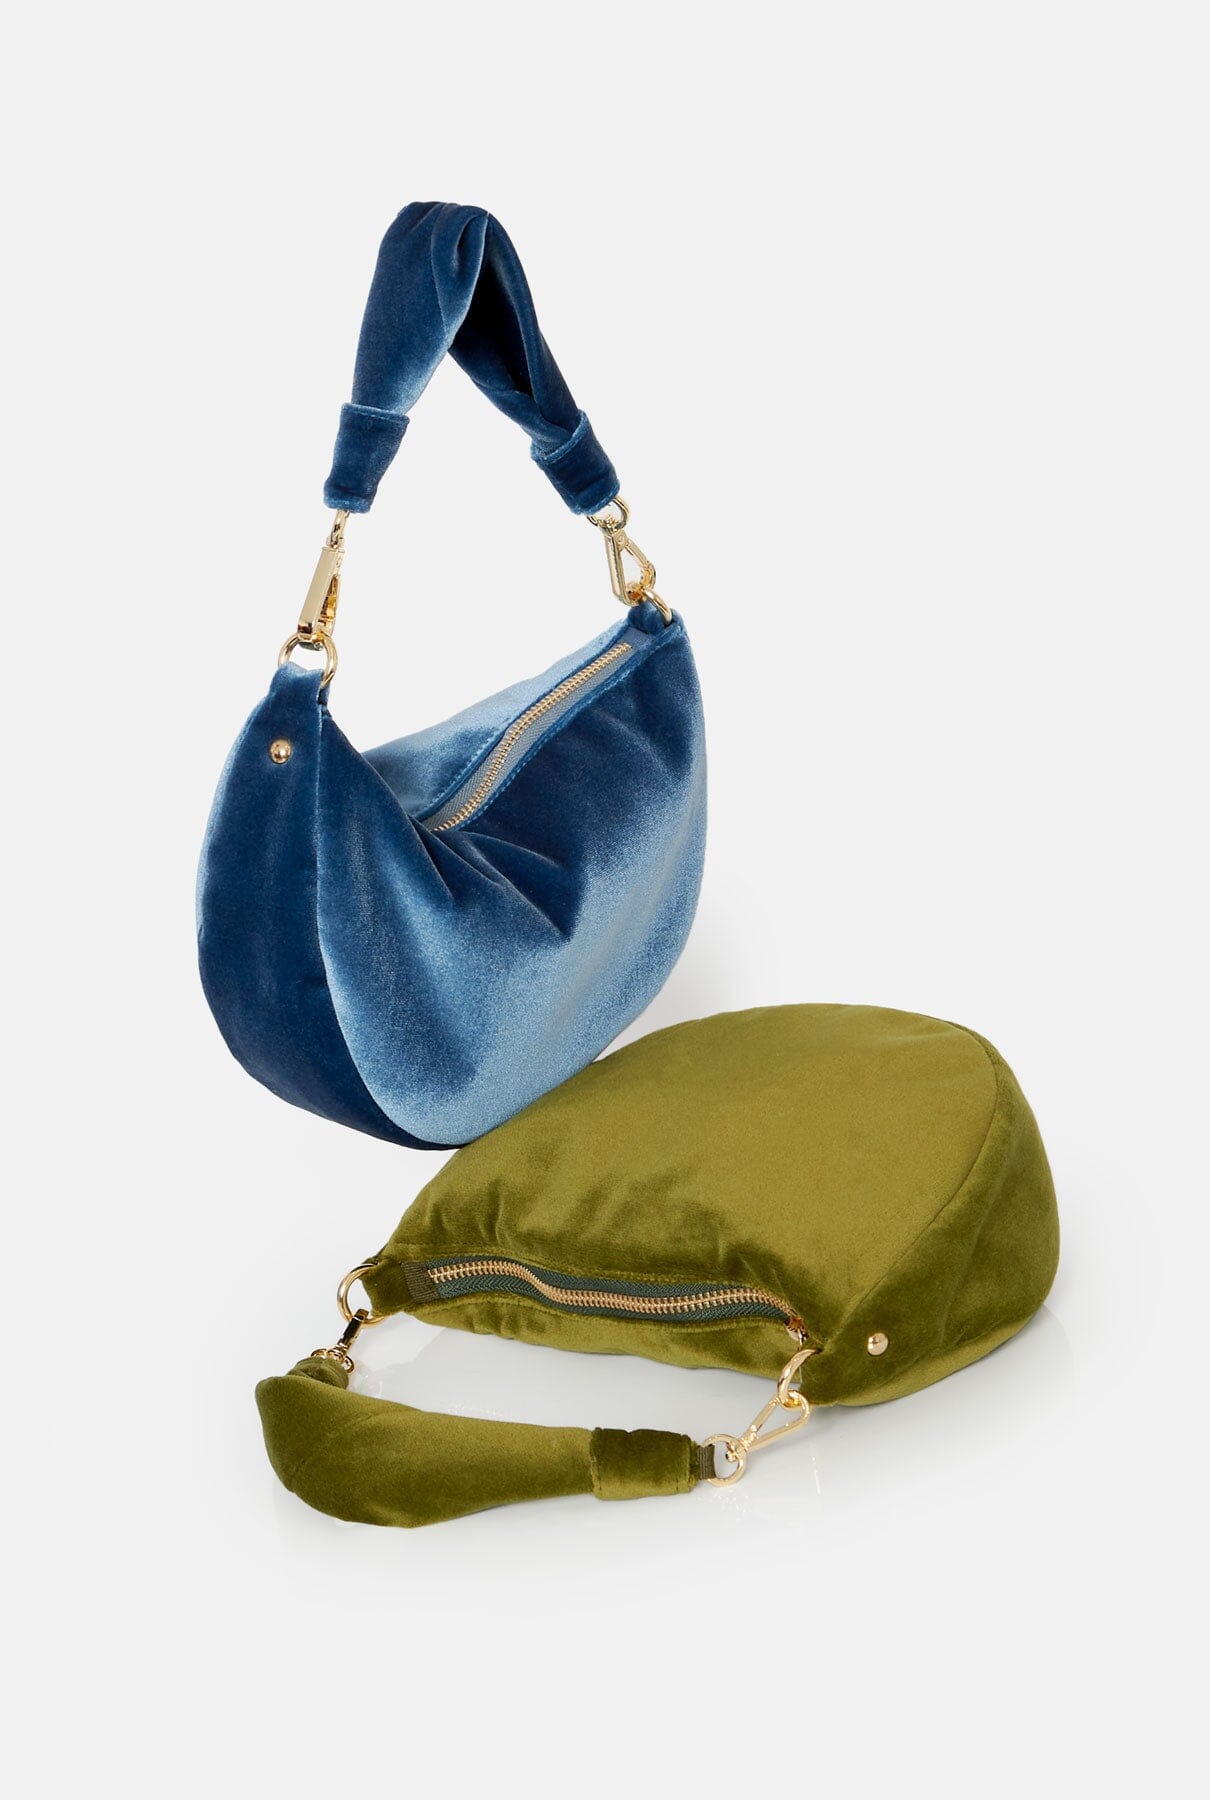 The Baby Gondola bag velvet Sky Blue Hand bags The Bag Lab 